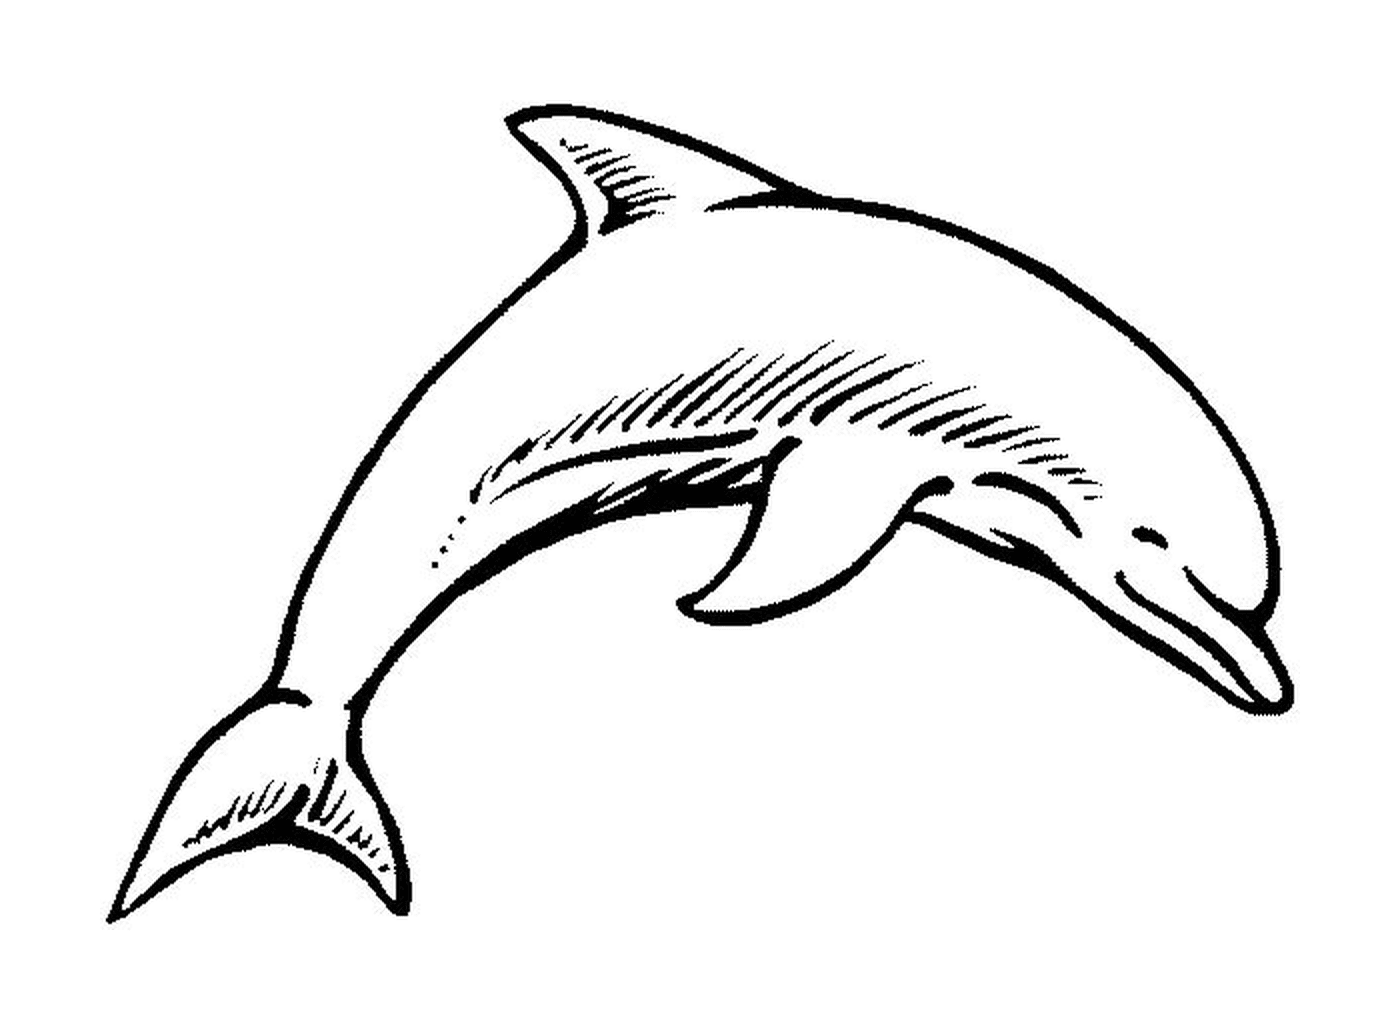  A dolphin 